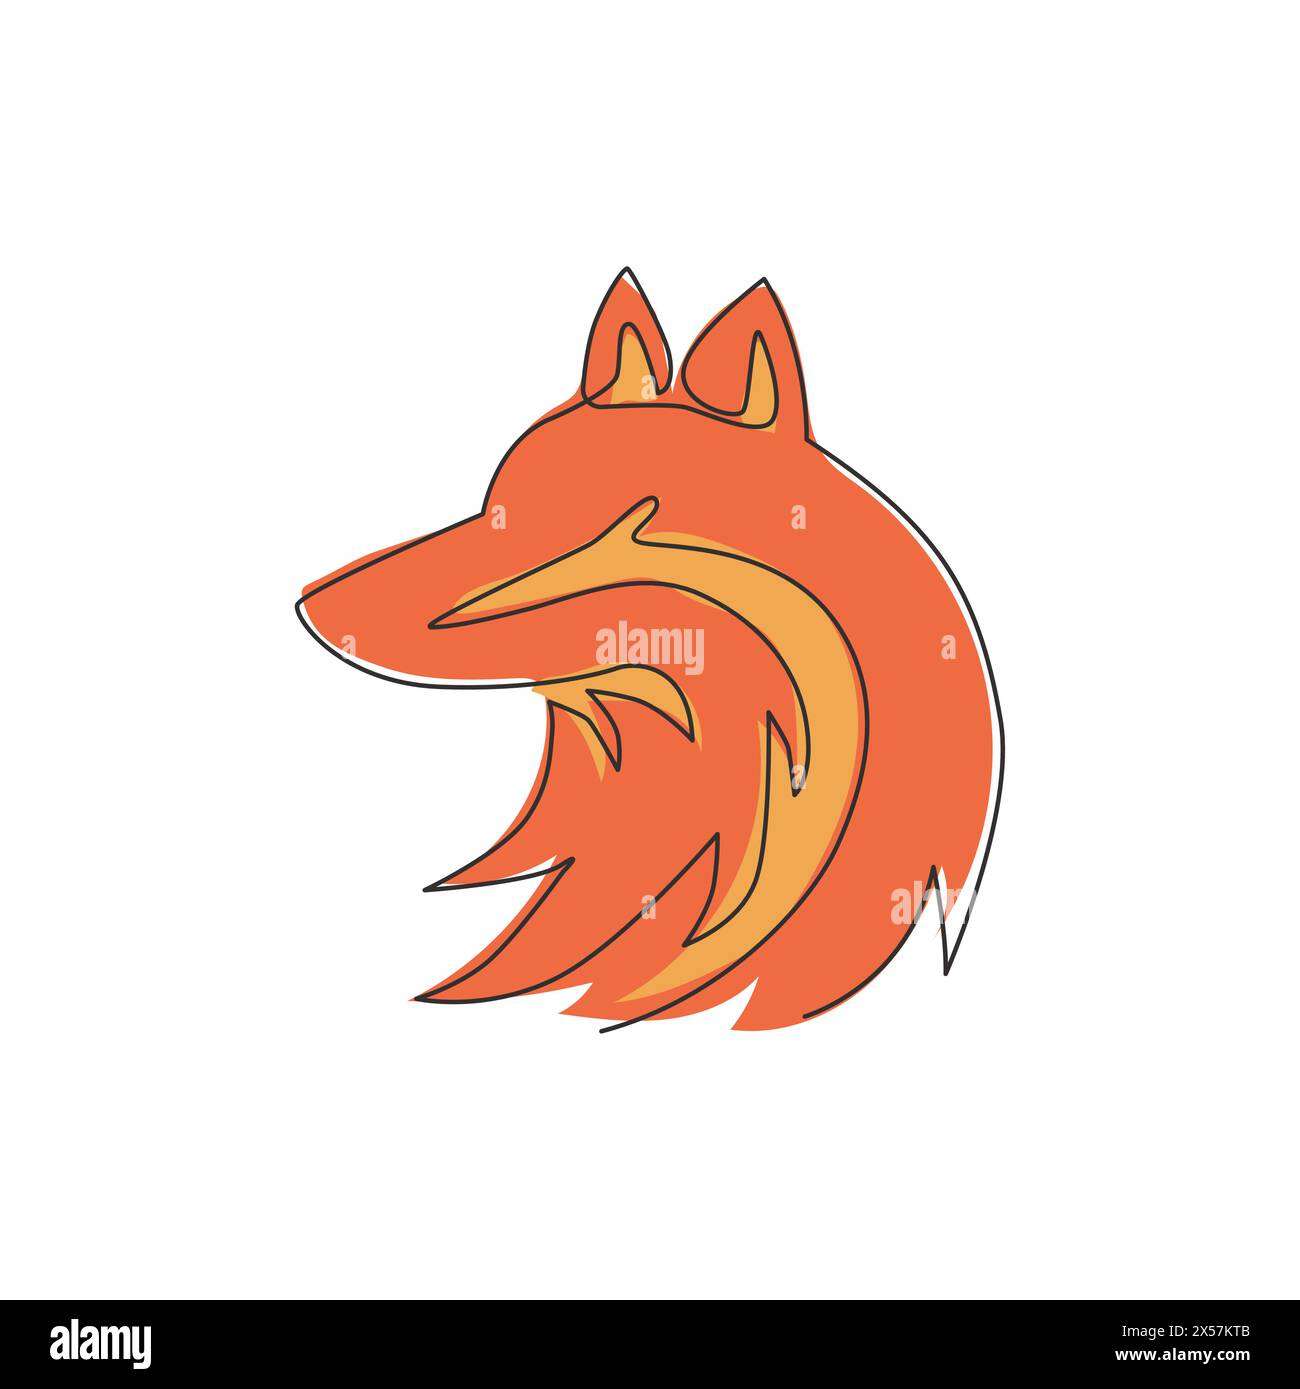 Dessin en ligne continue unique de l'identité du logo d'entreprise Cute Fox. Concept d'icône d'animal de zoo de mammifères. Dessin vectoriel dynamique à une ligne dessin graphique illus Illustration de Vecteur